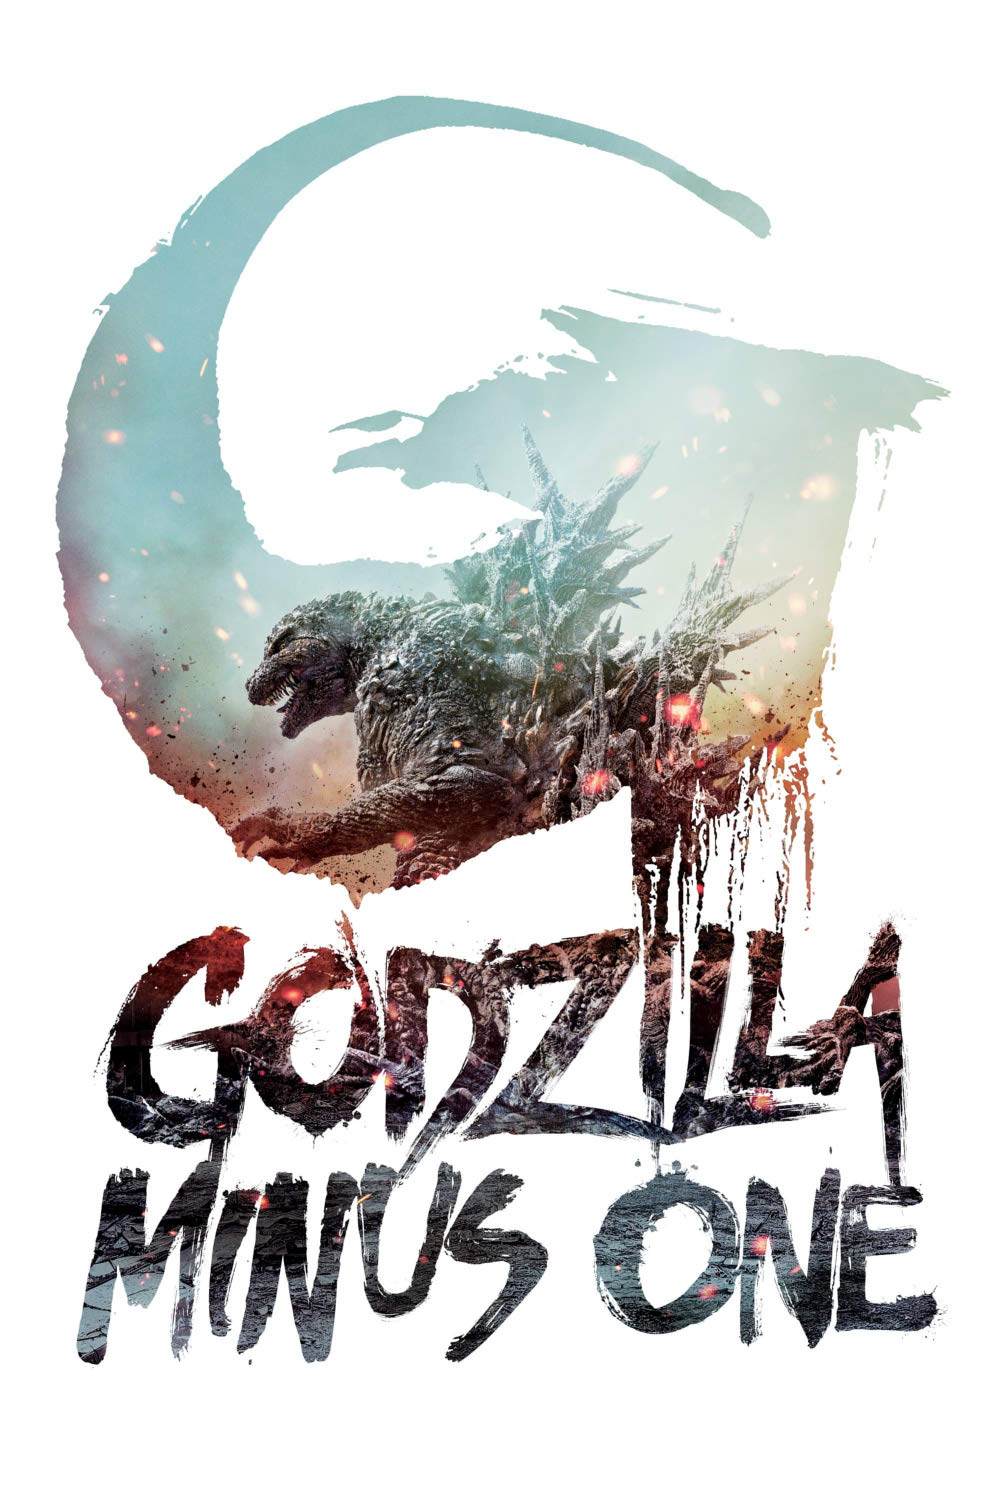 Godzilla: Minus One [Sub-ITA] (2023)